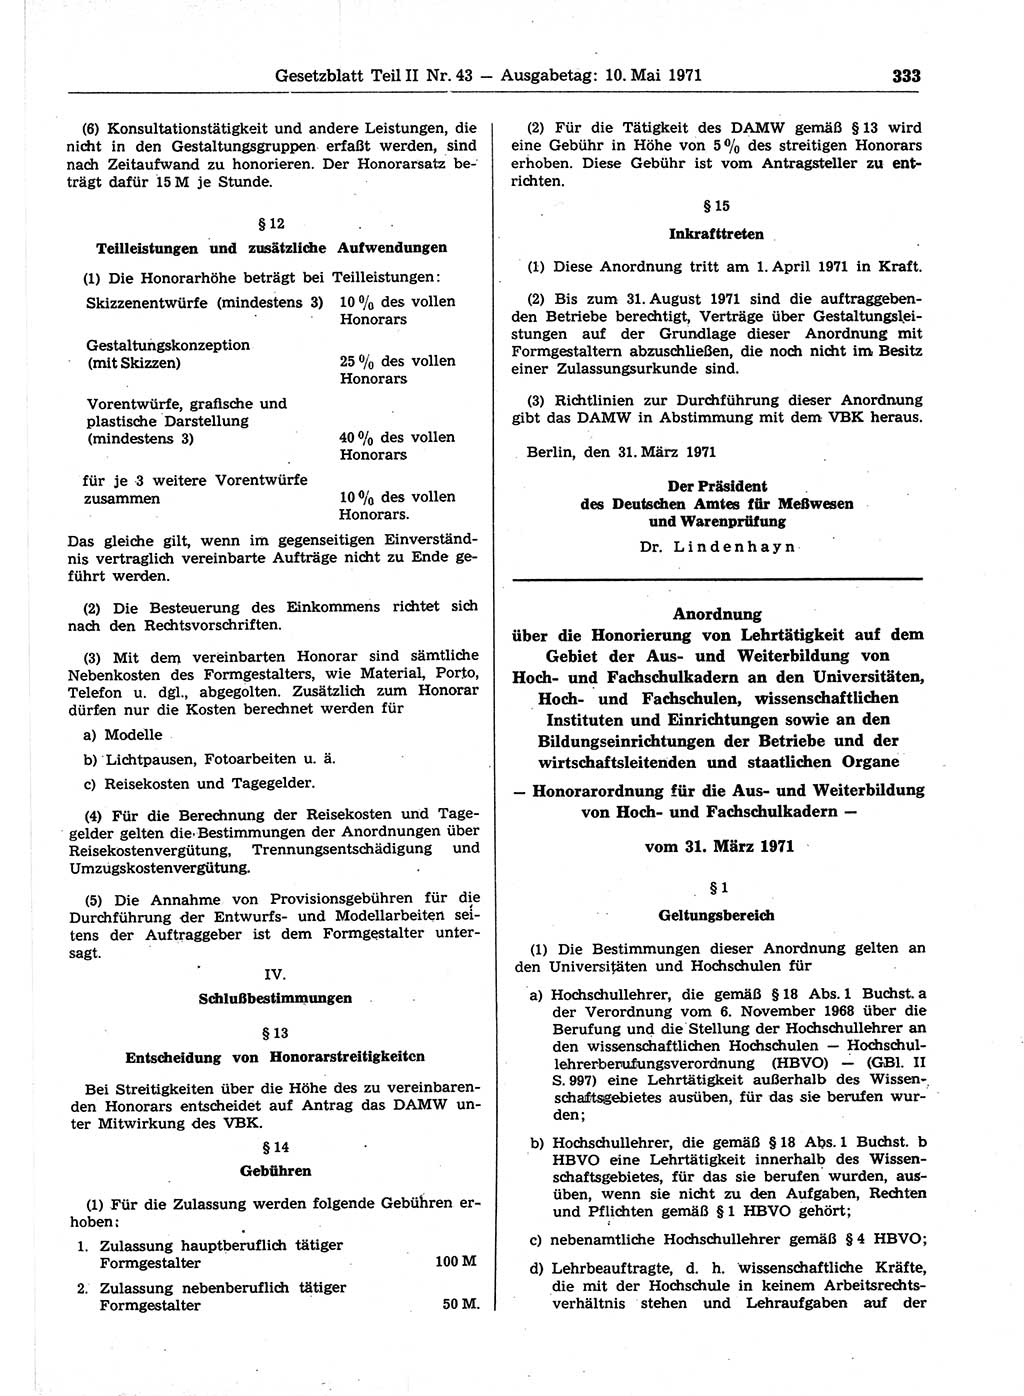 Gesetzblatt (GBl.) der Deutschen Demokratischen Republik (DDR) Teil ⅠⅠ 1971, Seite 333 (GBl. DDR ⅠⅠ 1971, S. 333)